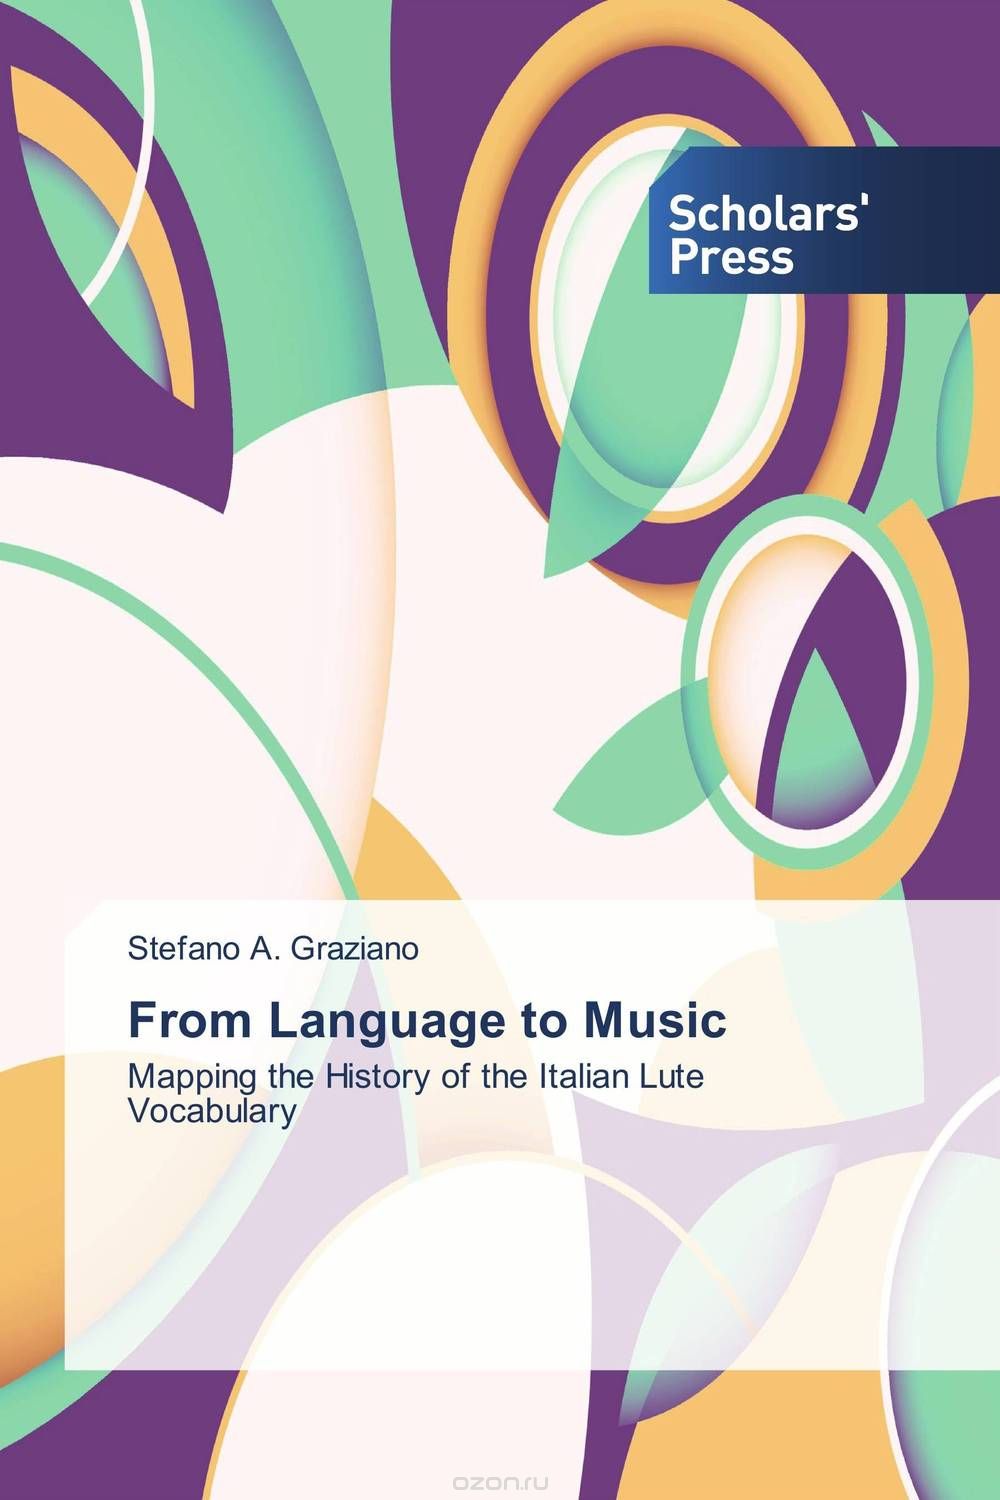 Скачать книгу "From Language to Music"